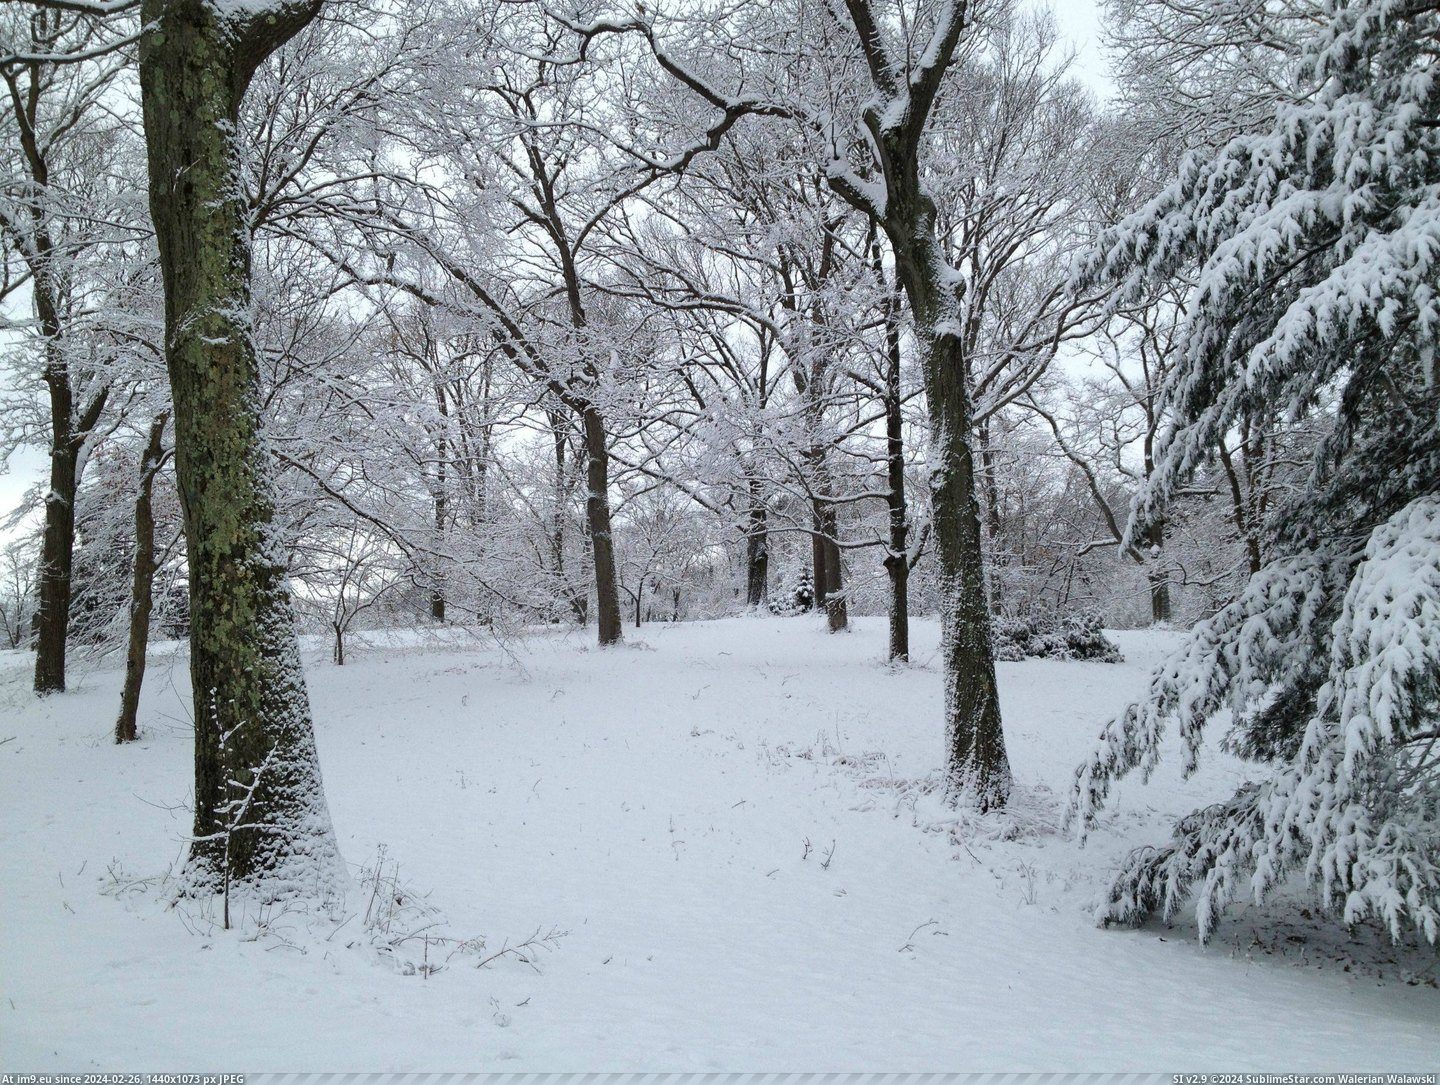 #Winter #Plain #Arboretum #Arnold #Jamaica [Earthporn] Arnold Arboretum in Winter, Jamaica Plain, MA [2448X1836] Pic. (Bild von album My r/EARTHPORN favs))